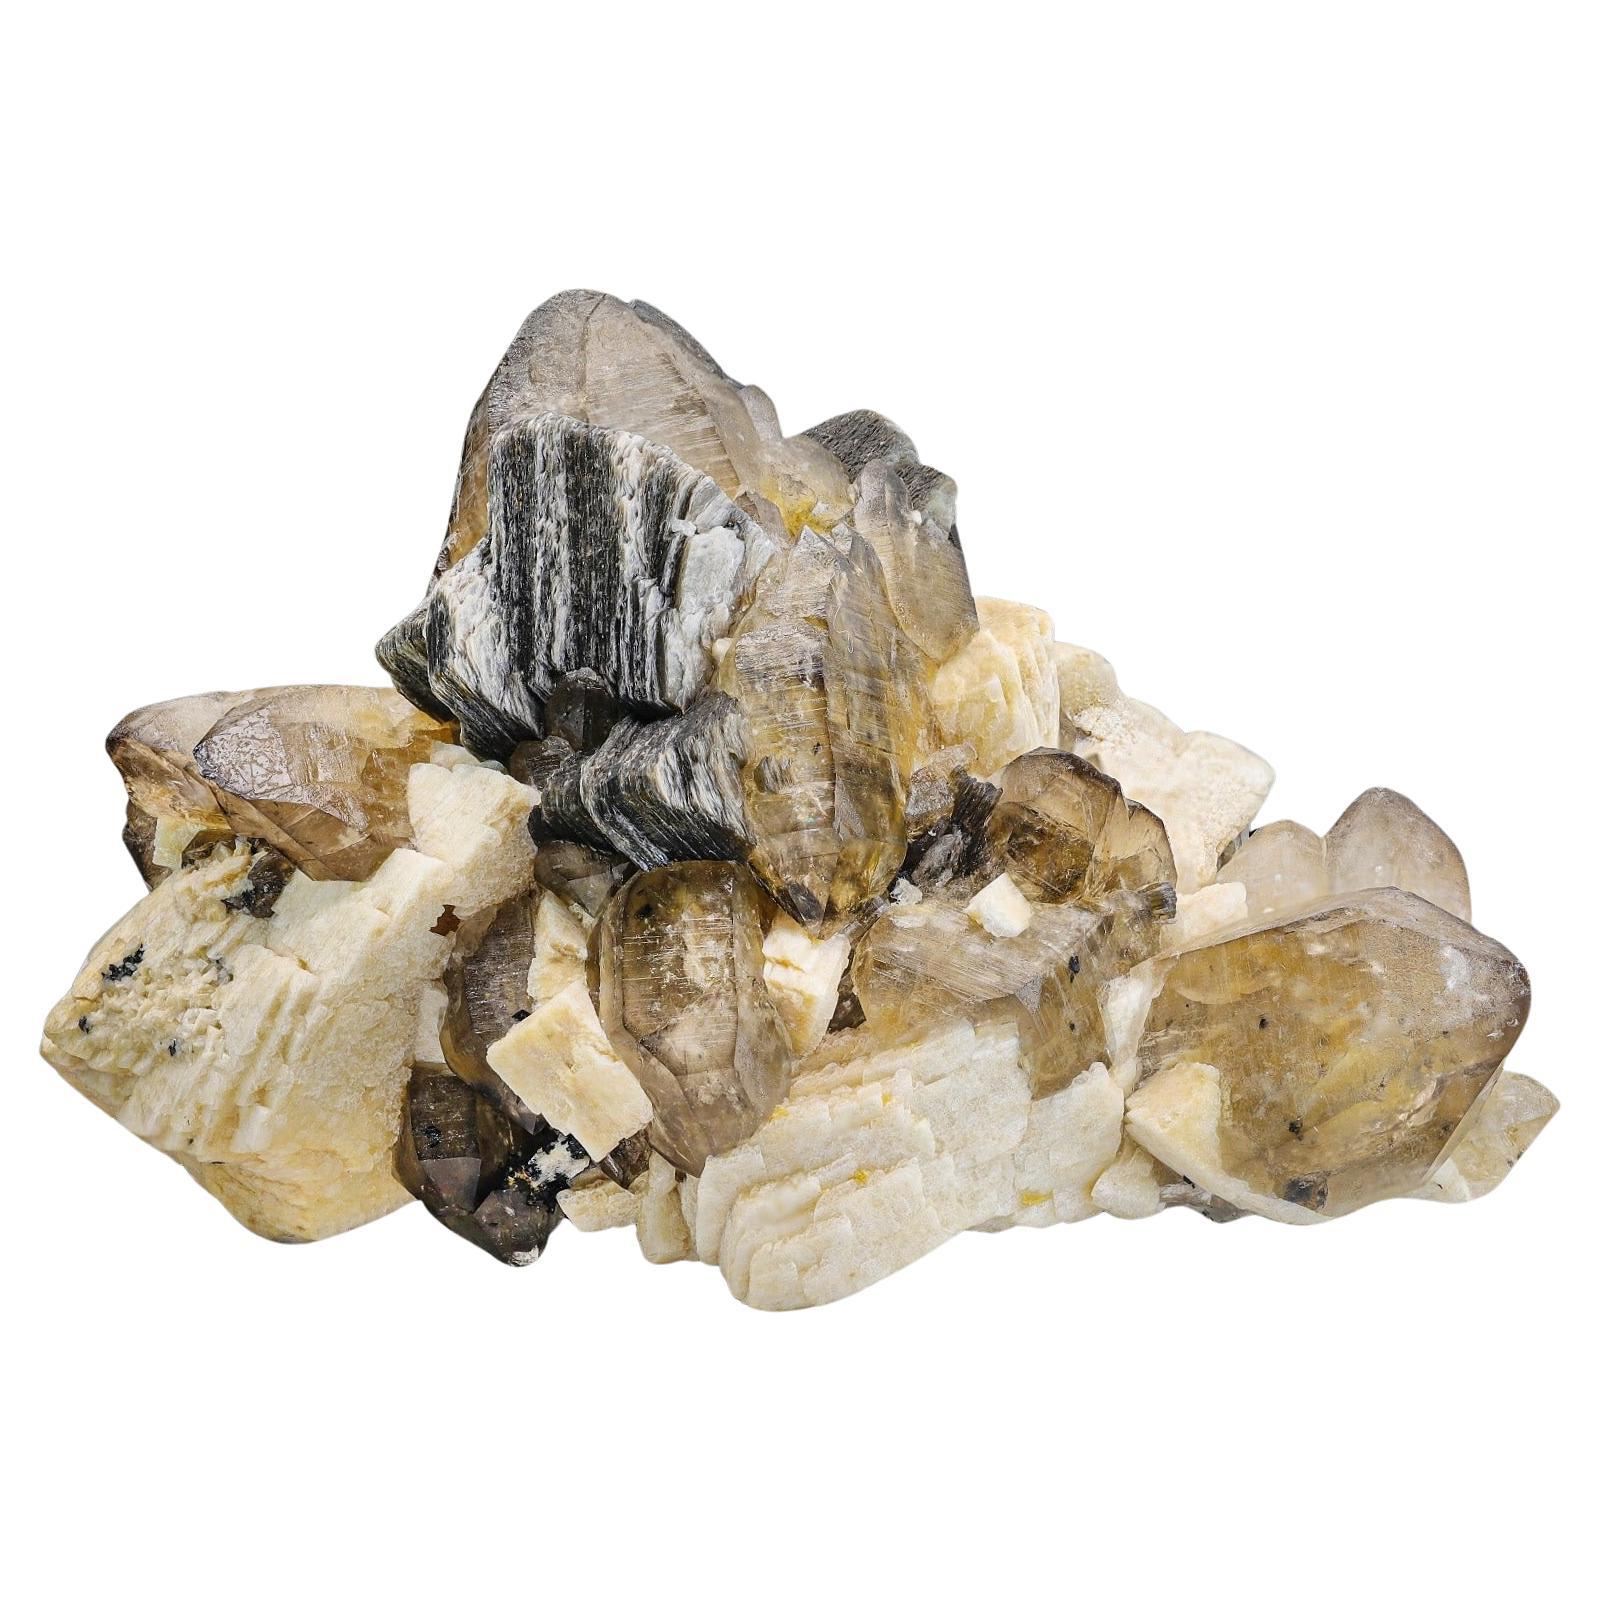 Large Cabinet Museum Level Specimen 6kg Of Smoky Quartz Crystals for Sale For Sale